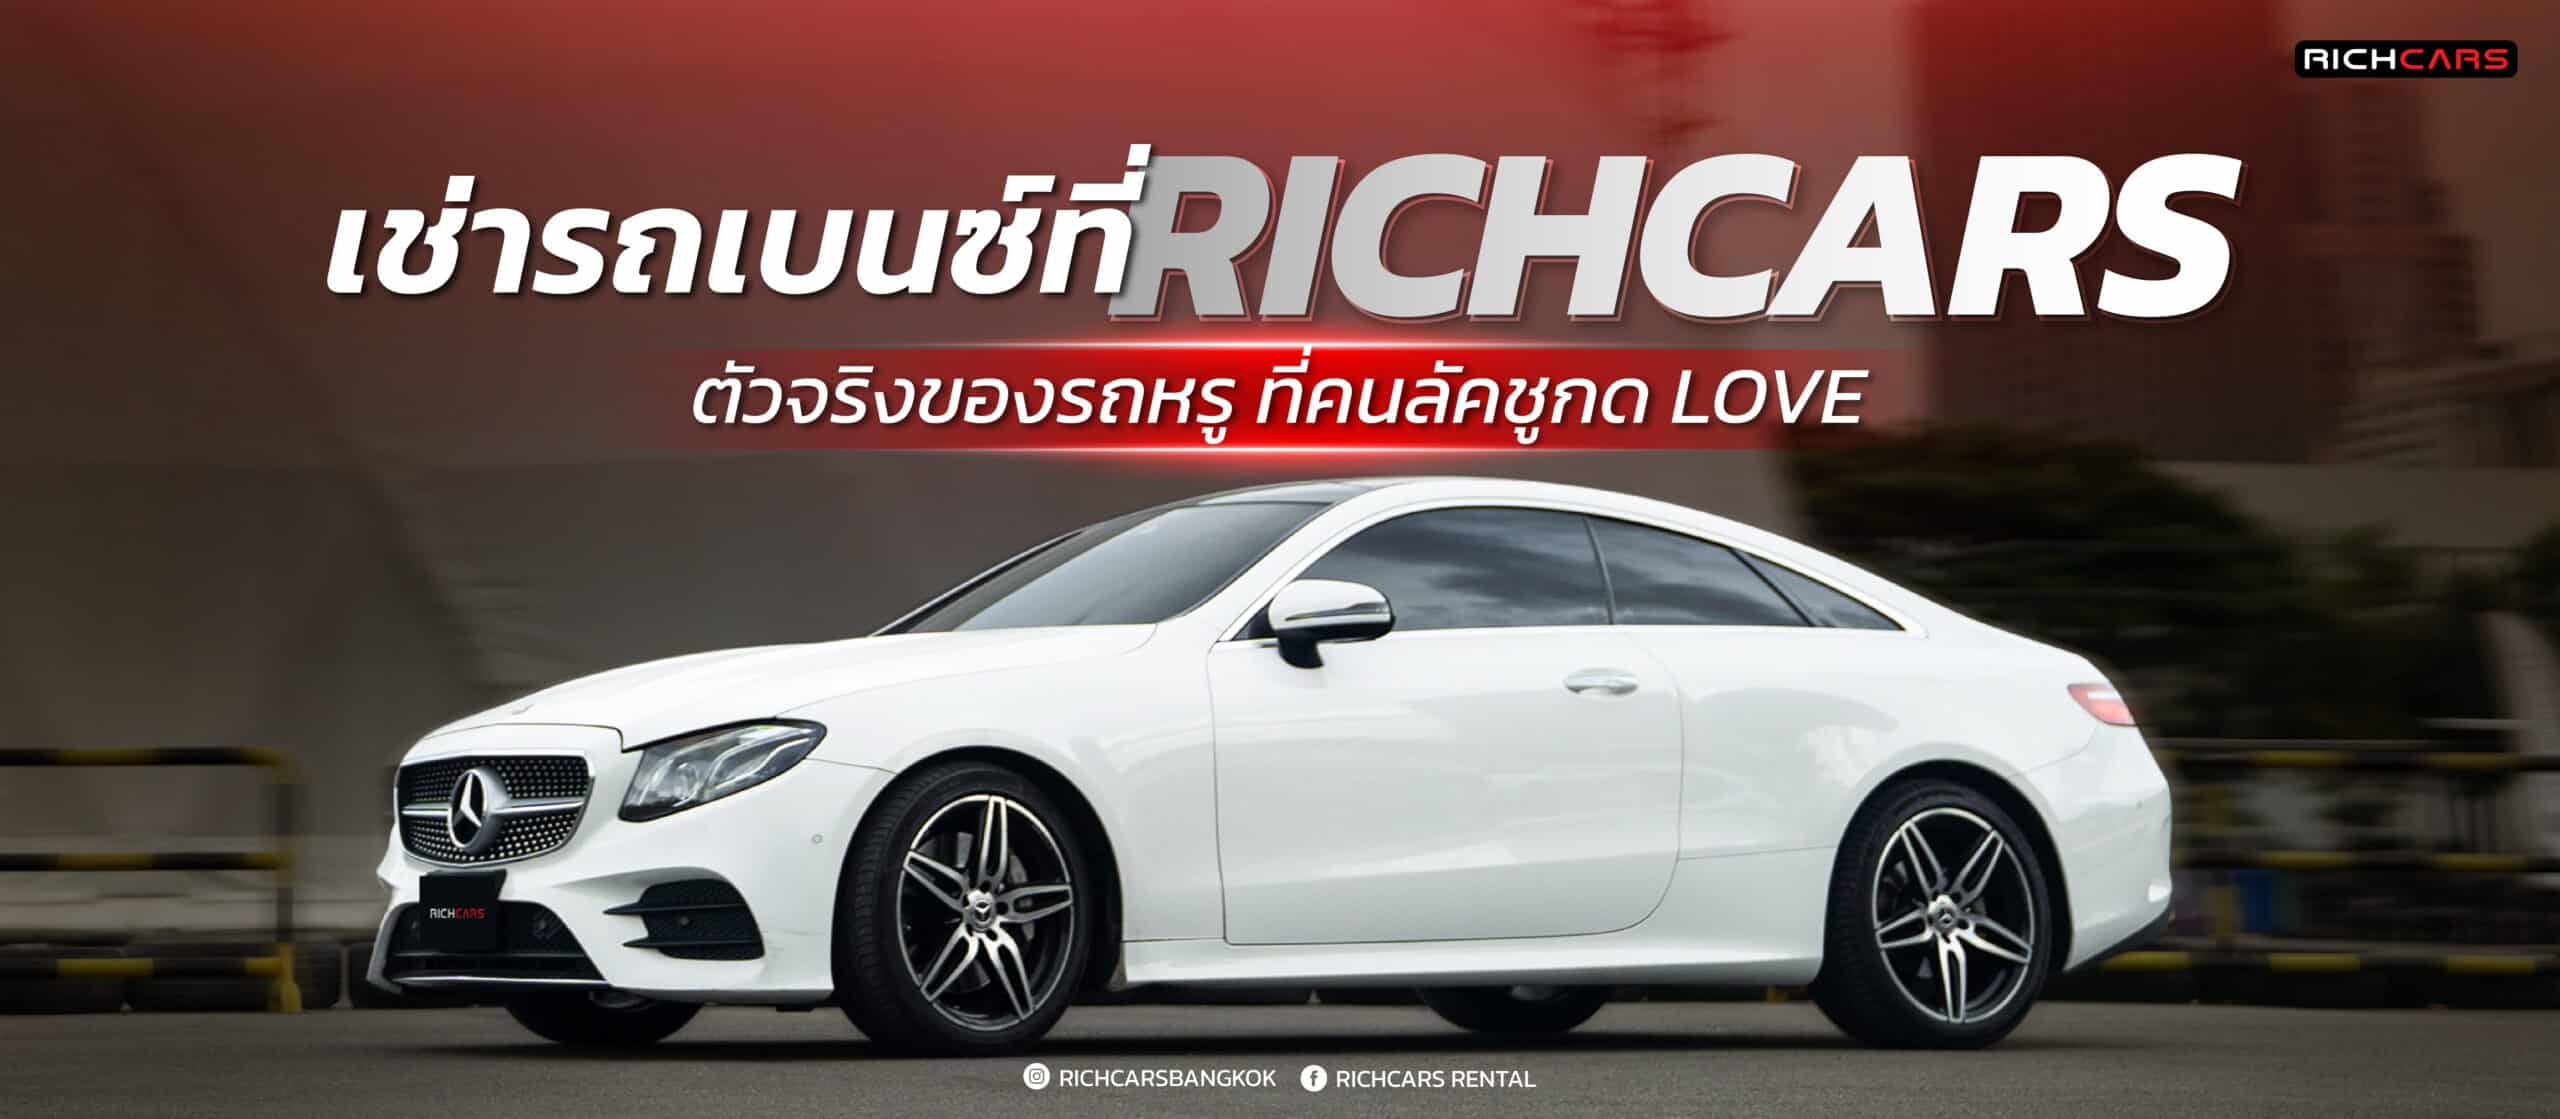 เช่ารถเบนซ์ จาก Richcars ตัวจริงของรถหรู ที่คนรักความลัคชูต้องกด LOVE